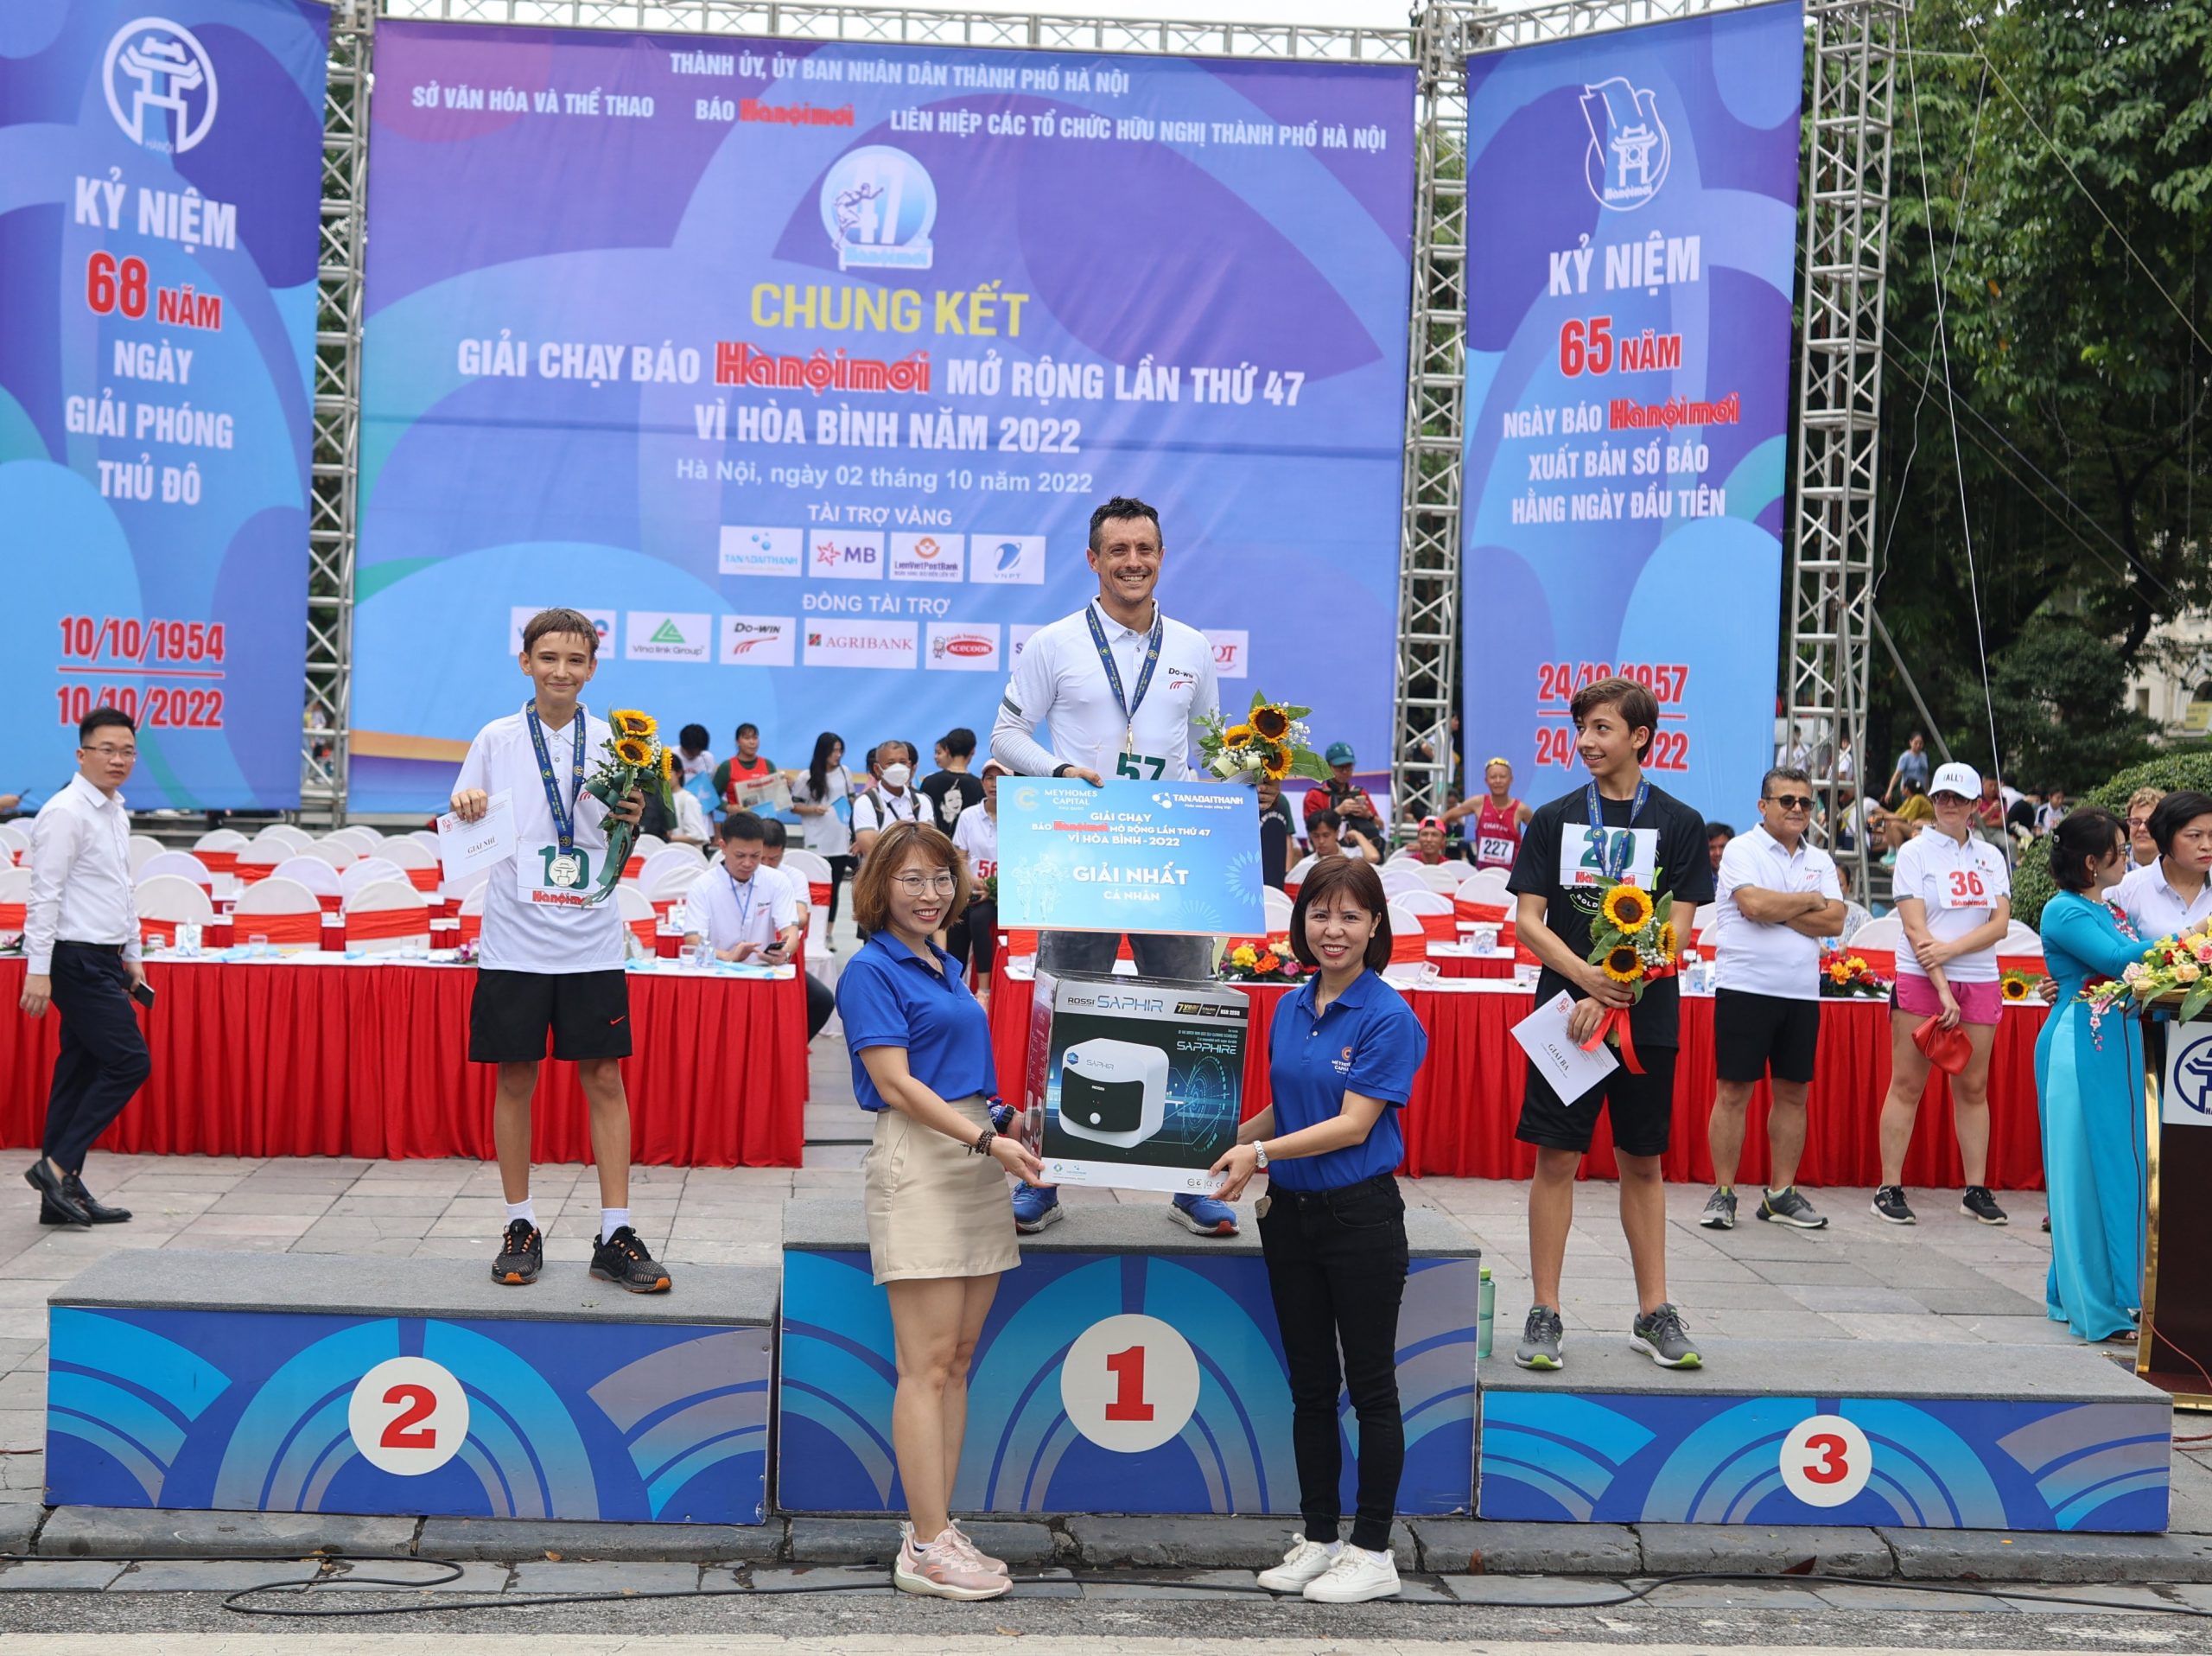 Tân Á Đại Thành hòa nhịp thể thao tại Giải chạy Báo Hà nội mới lần thứ 47